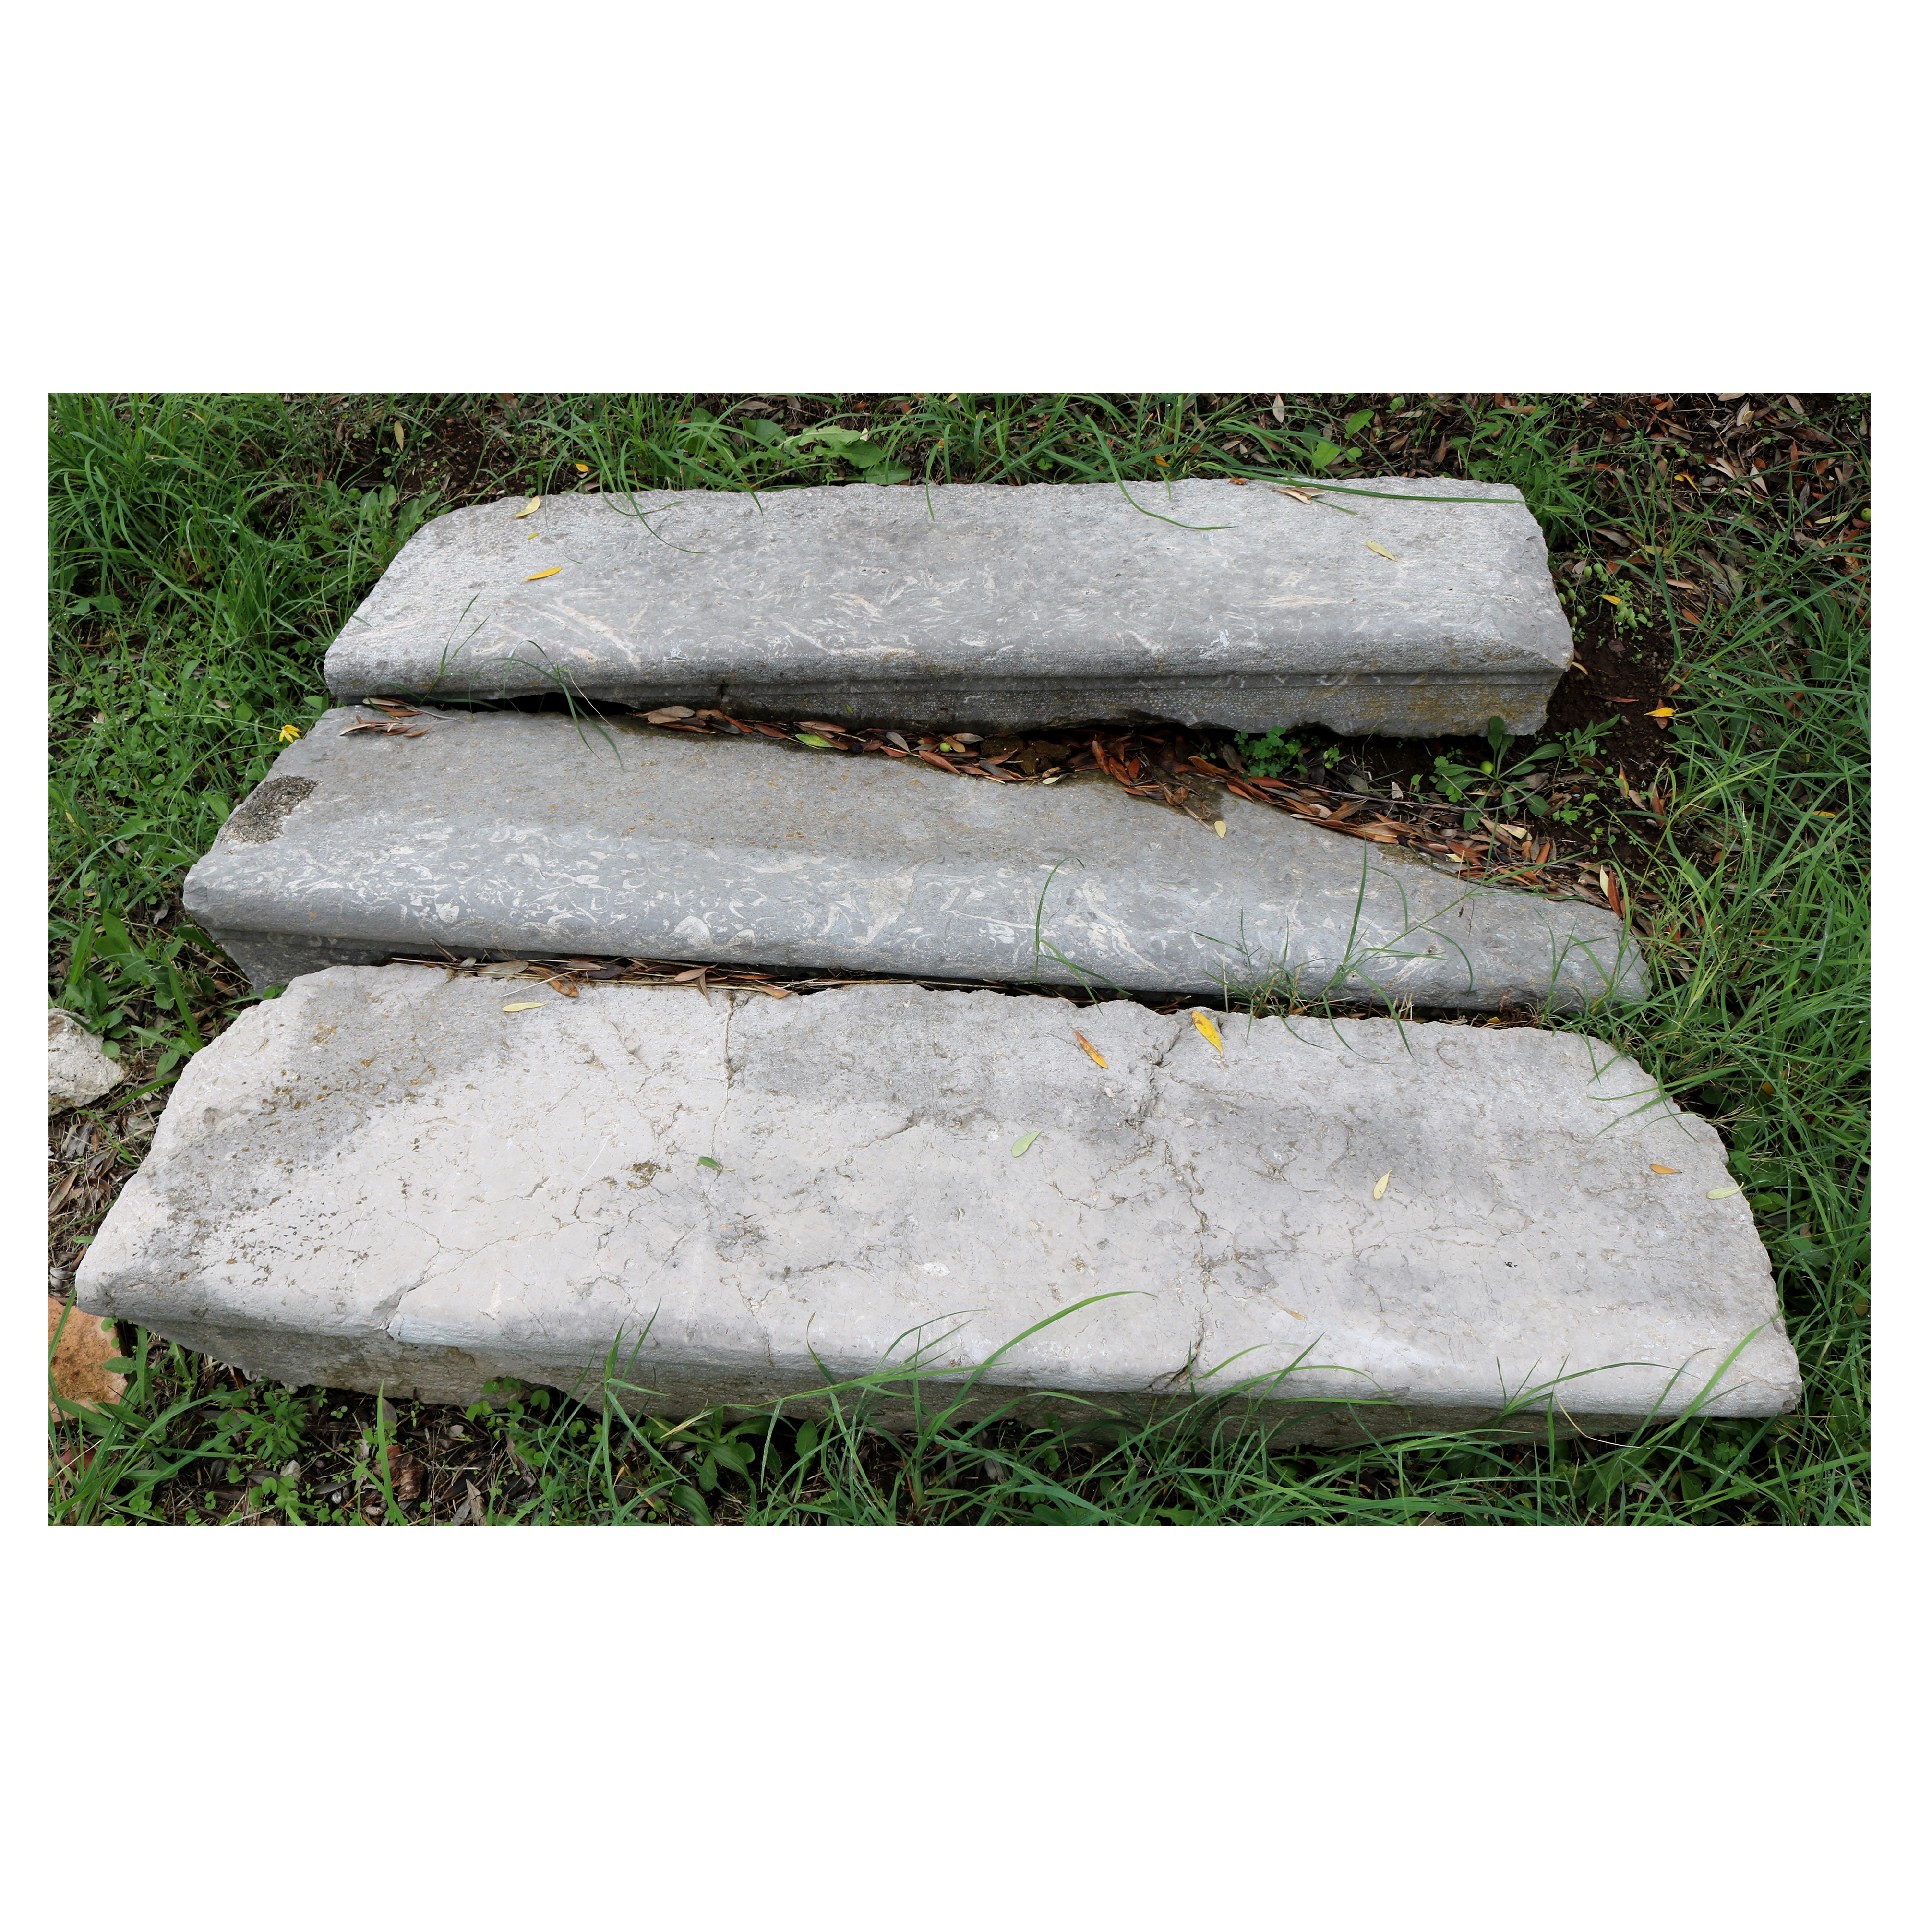 Antica scalinata in marmo - Scale Antiche - Architettura - Prodotti - Antichità Fiorillo